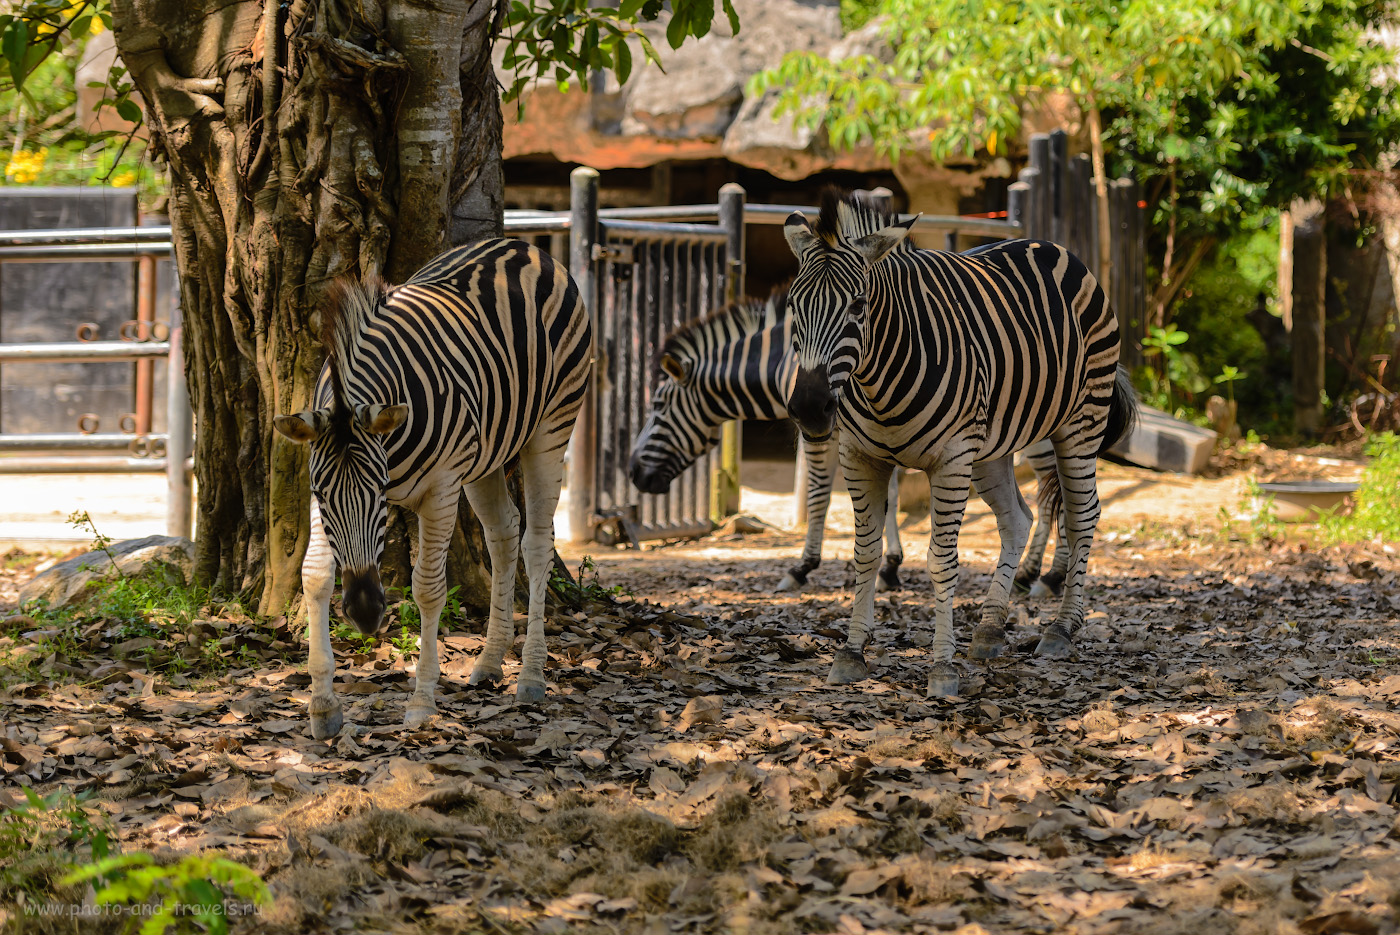 Фото 11. Зебры в зоопарке Khao Kheow Open Zoo. Стоит ли ехать сюда на экскурсию с детьми. Отзывы об отдыхе в Паттайе в октябре месяце. 1/500, +0.33, 2.8, 180, 100.